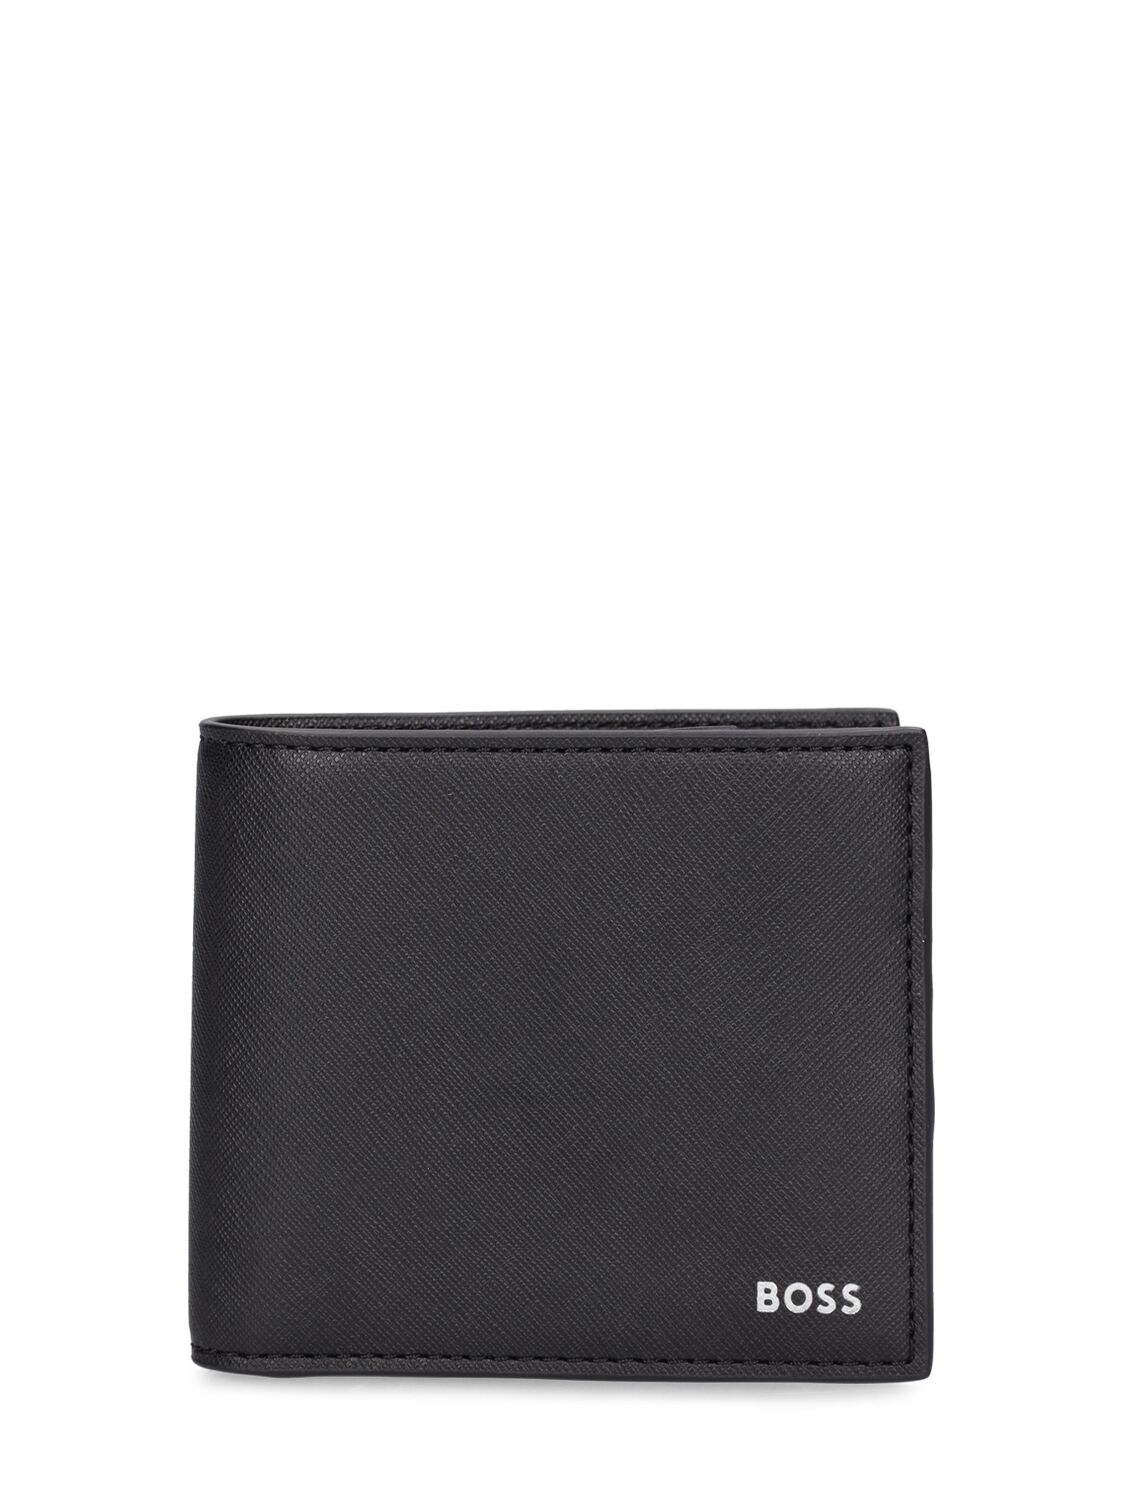 Hugo Boss Zair Leather Billfold Wallet In Black